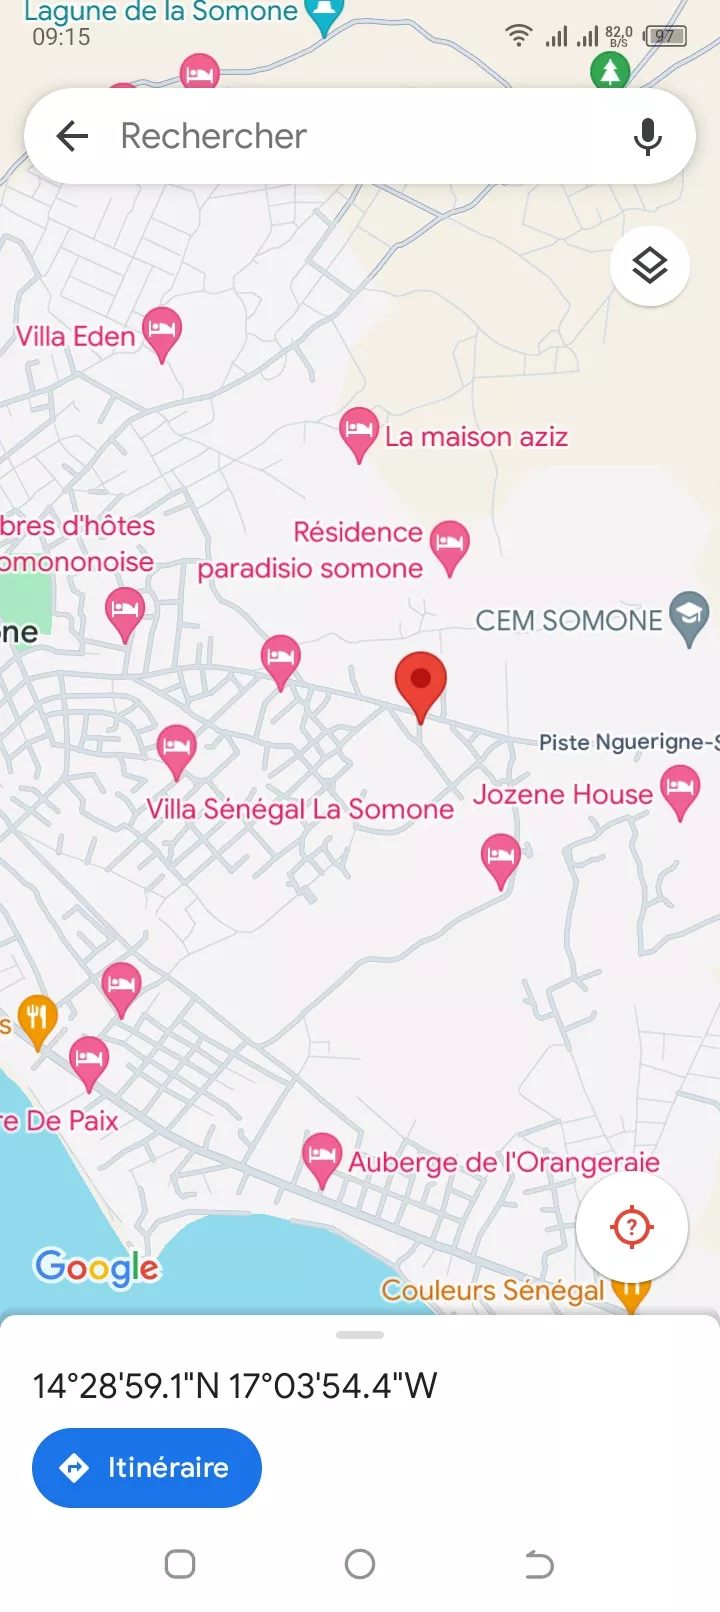 Terrain 300 mètres carrés à Somone à 18000000 - Petites annonces gratuites - Achat et vente à Mbour, Sénégal